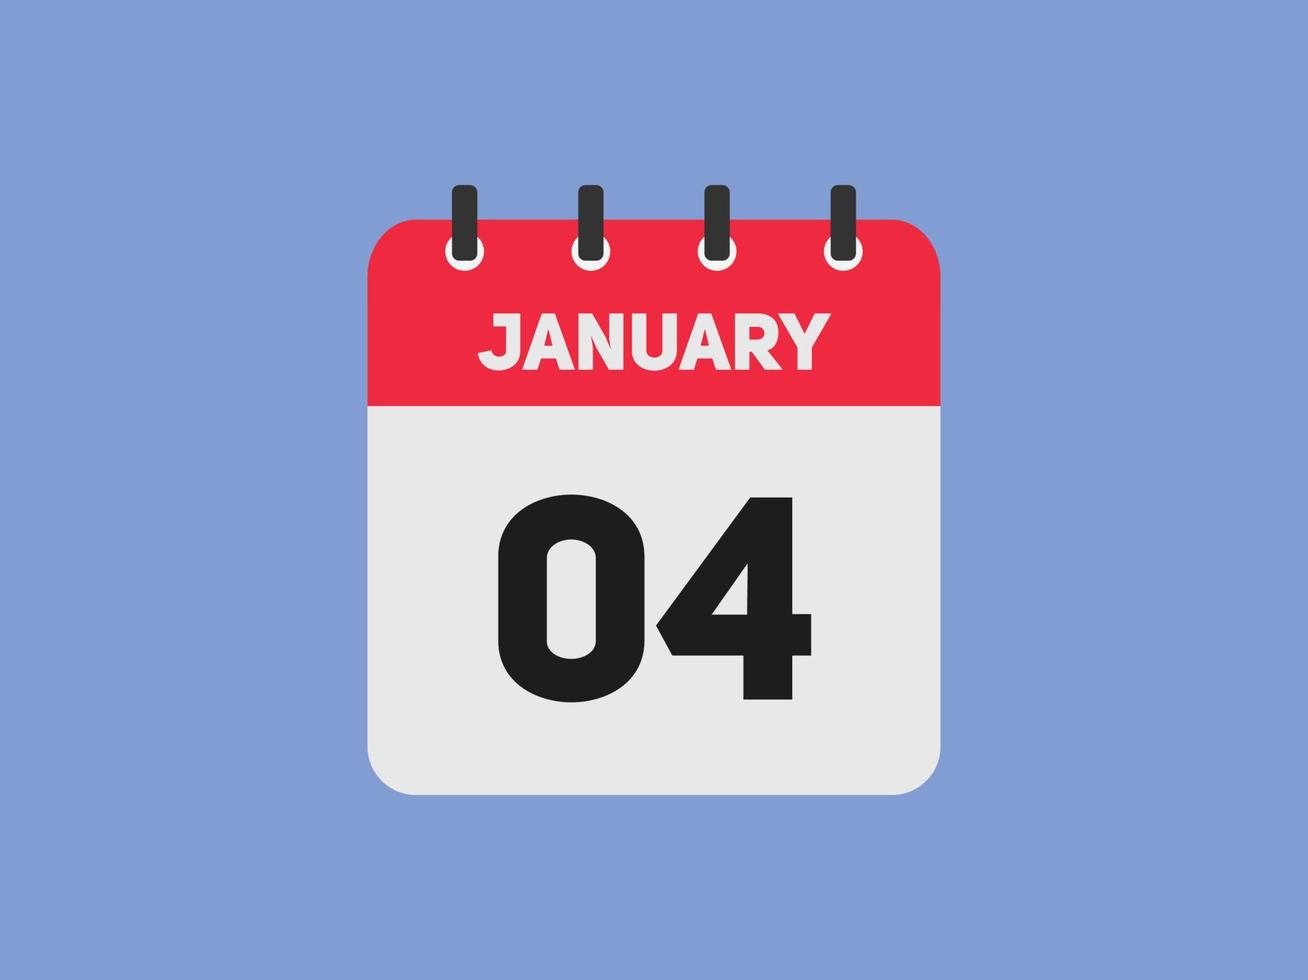 lembrete de calendário de 4 de janeiro. 4 de janeiro modelo de ícone de calendário diário. modelo de design de ícone de 4 de janeiro de calendário. ilustração vetorial vetor